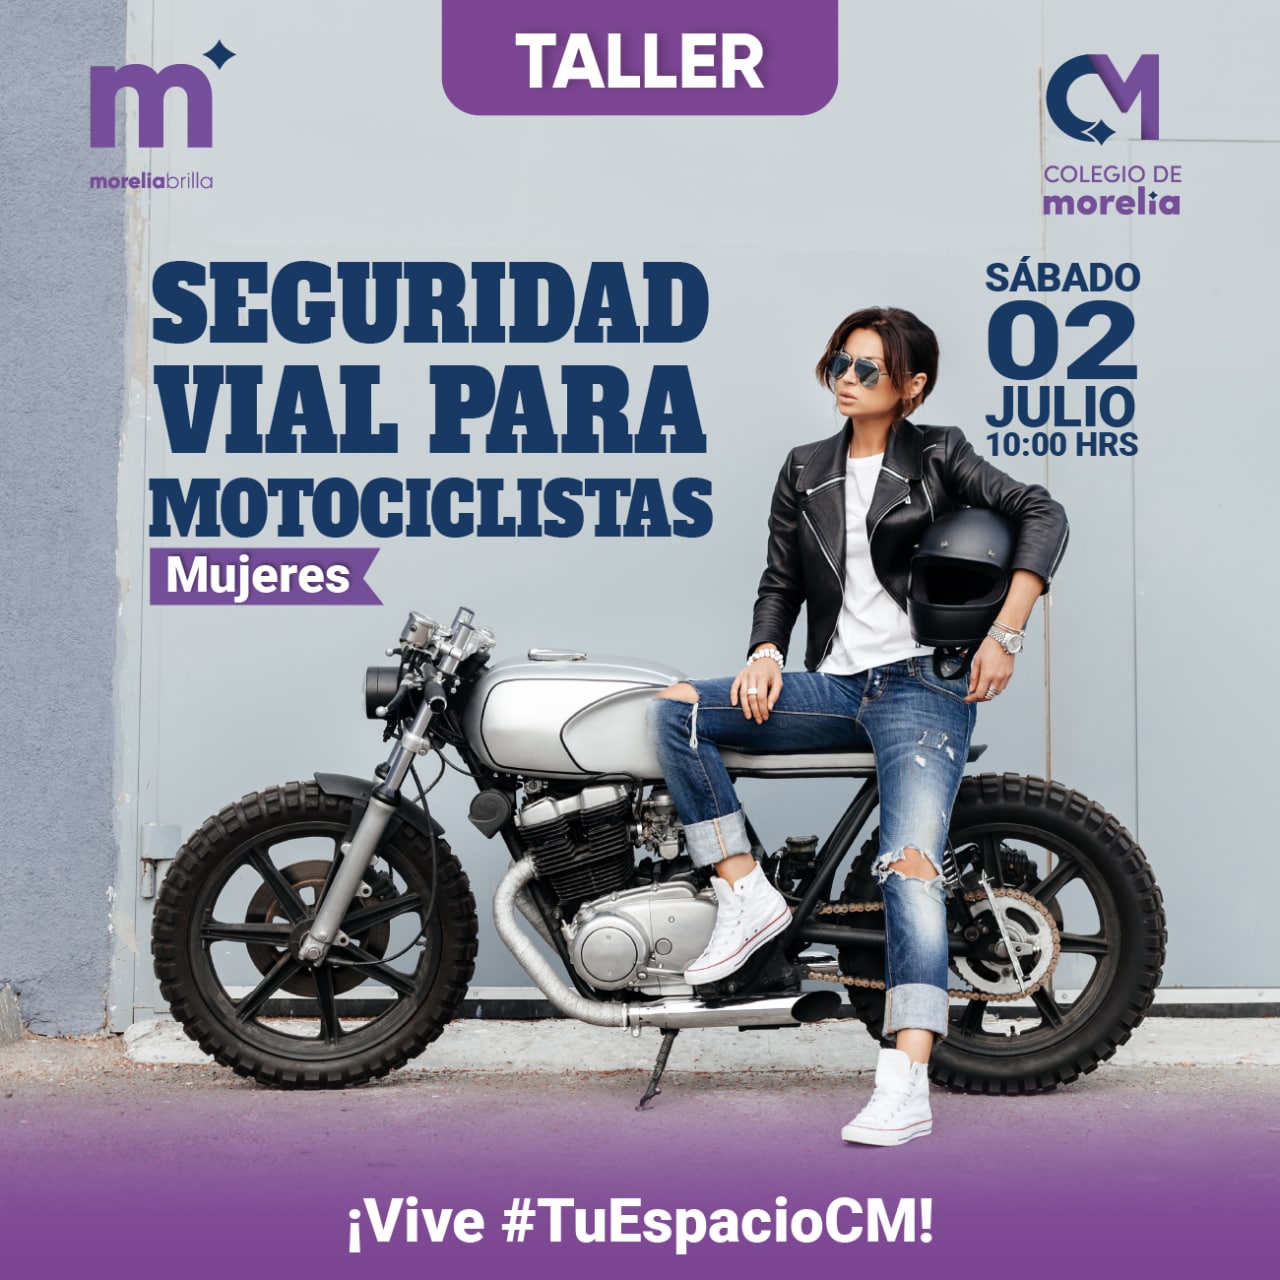 Colegio de Morelia invita a mujeres motociclistas a participar en taller de Seguridad Vial.